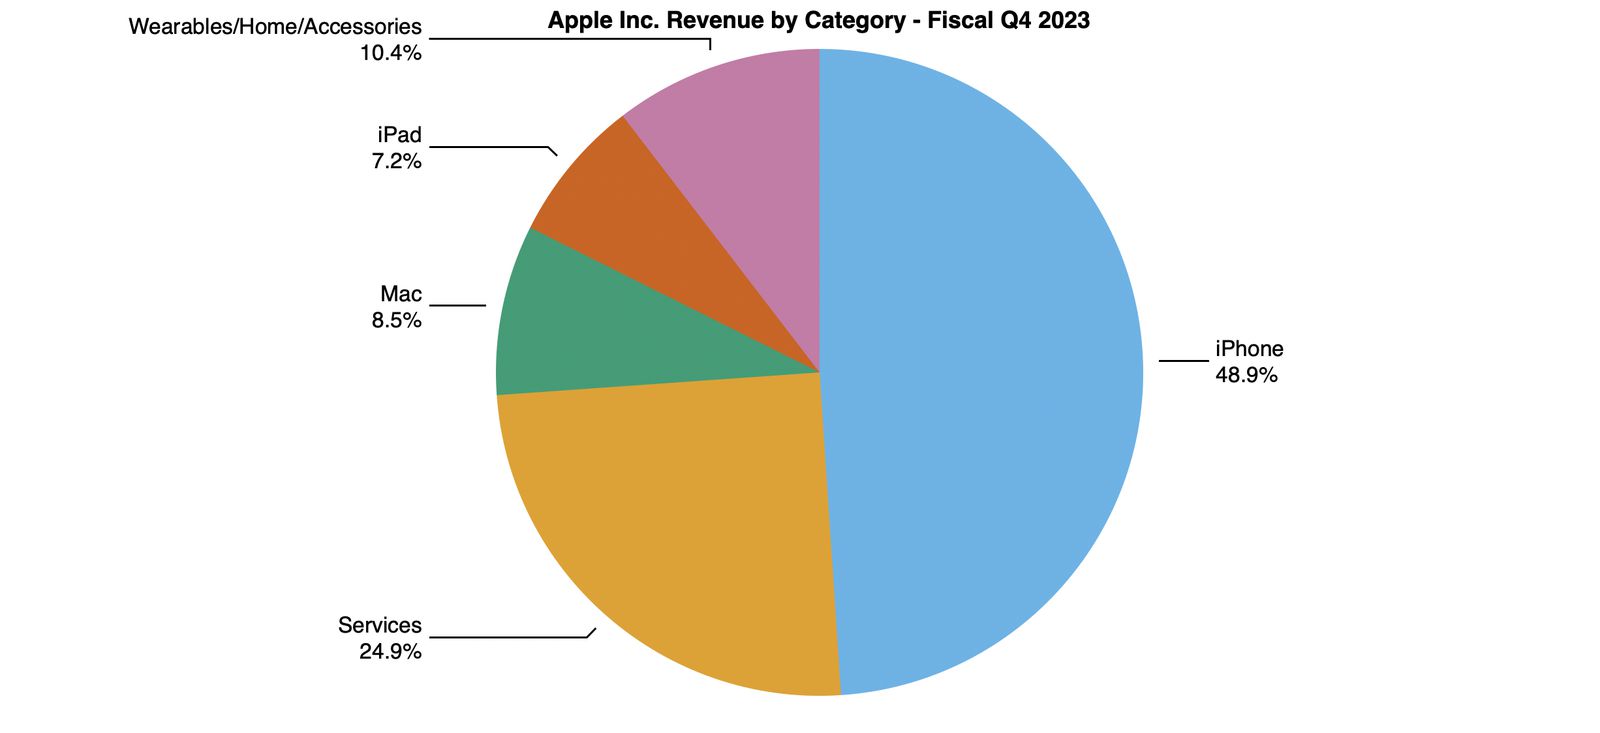 Distribución de la facturación de Apple por categorías de productos y servicios en el tercer trimestre del año 2023